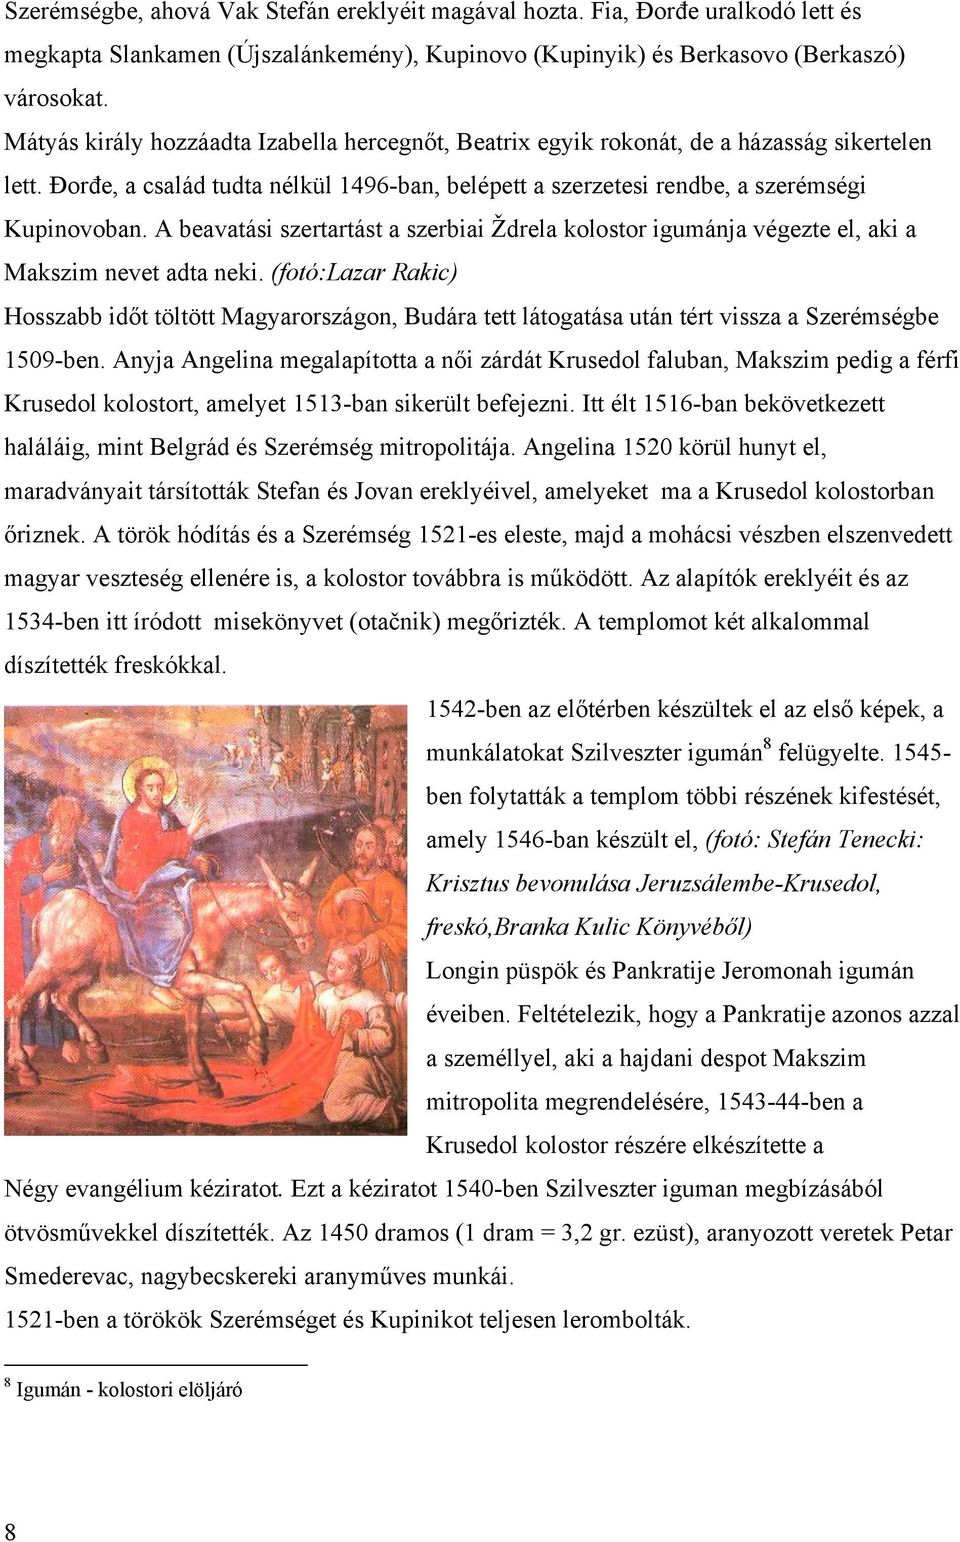 A beavatási szertartást a szerbiai Ždrela kolostor igumánja végezte el, aki a Makszim nevet adta neki.